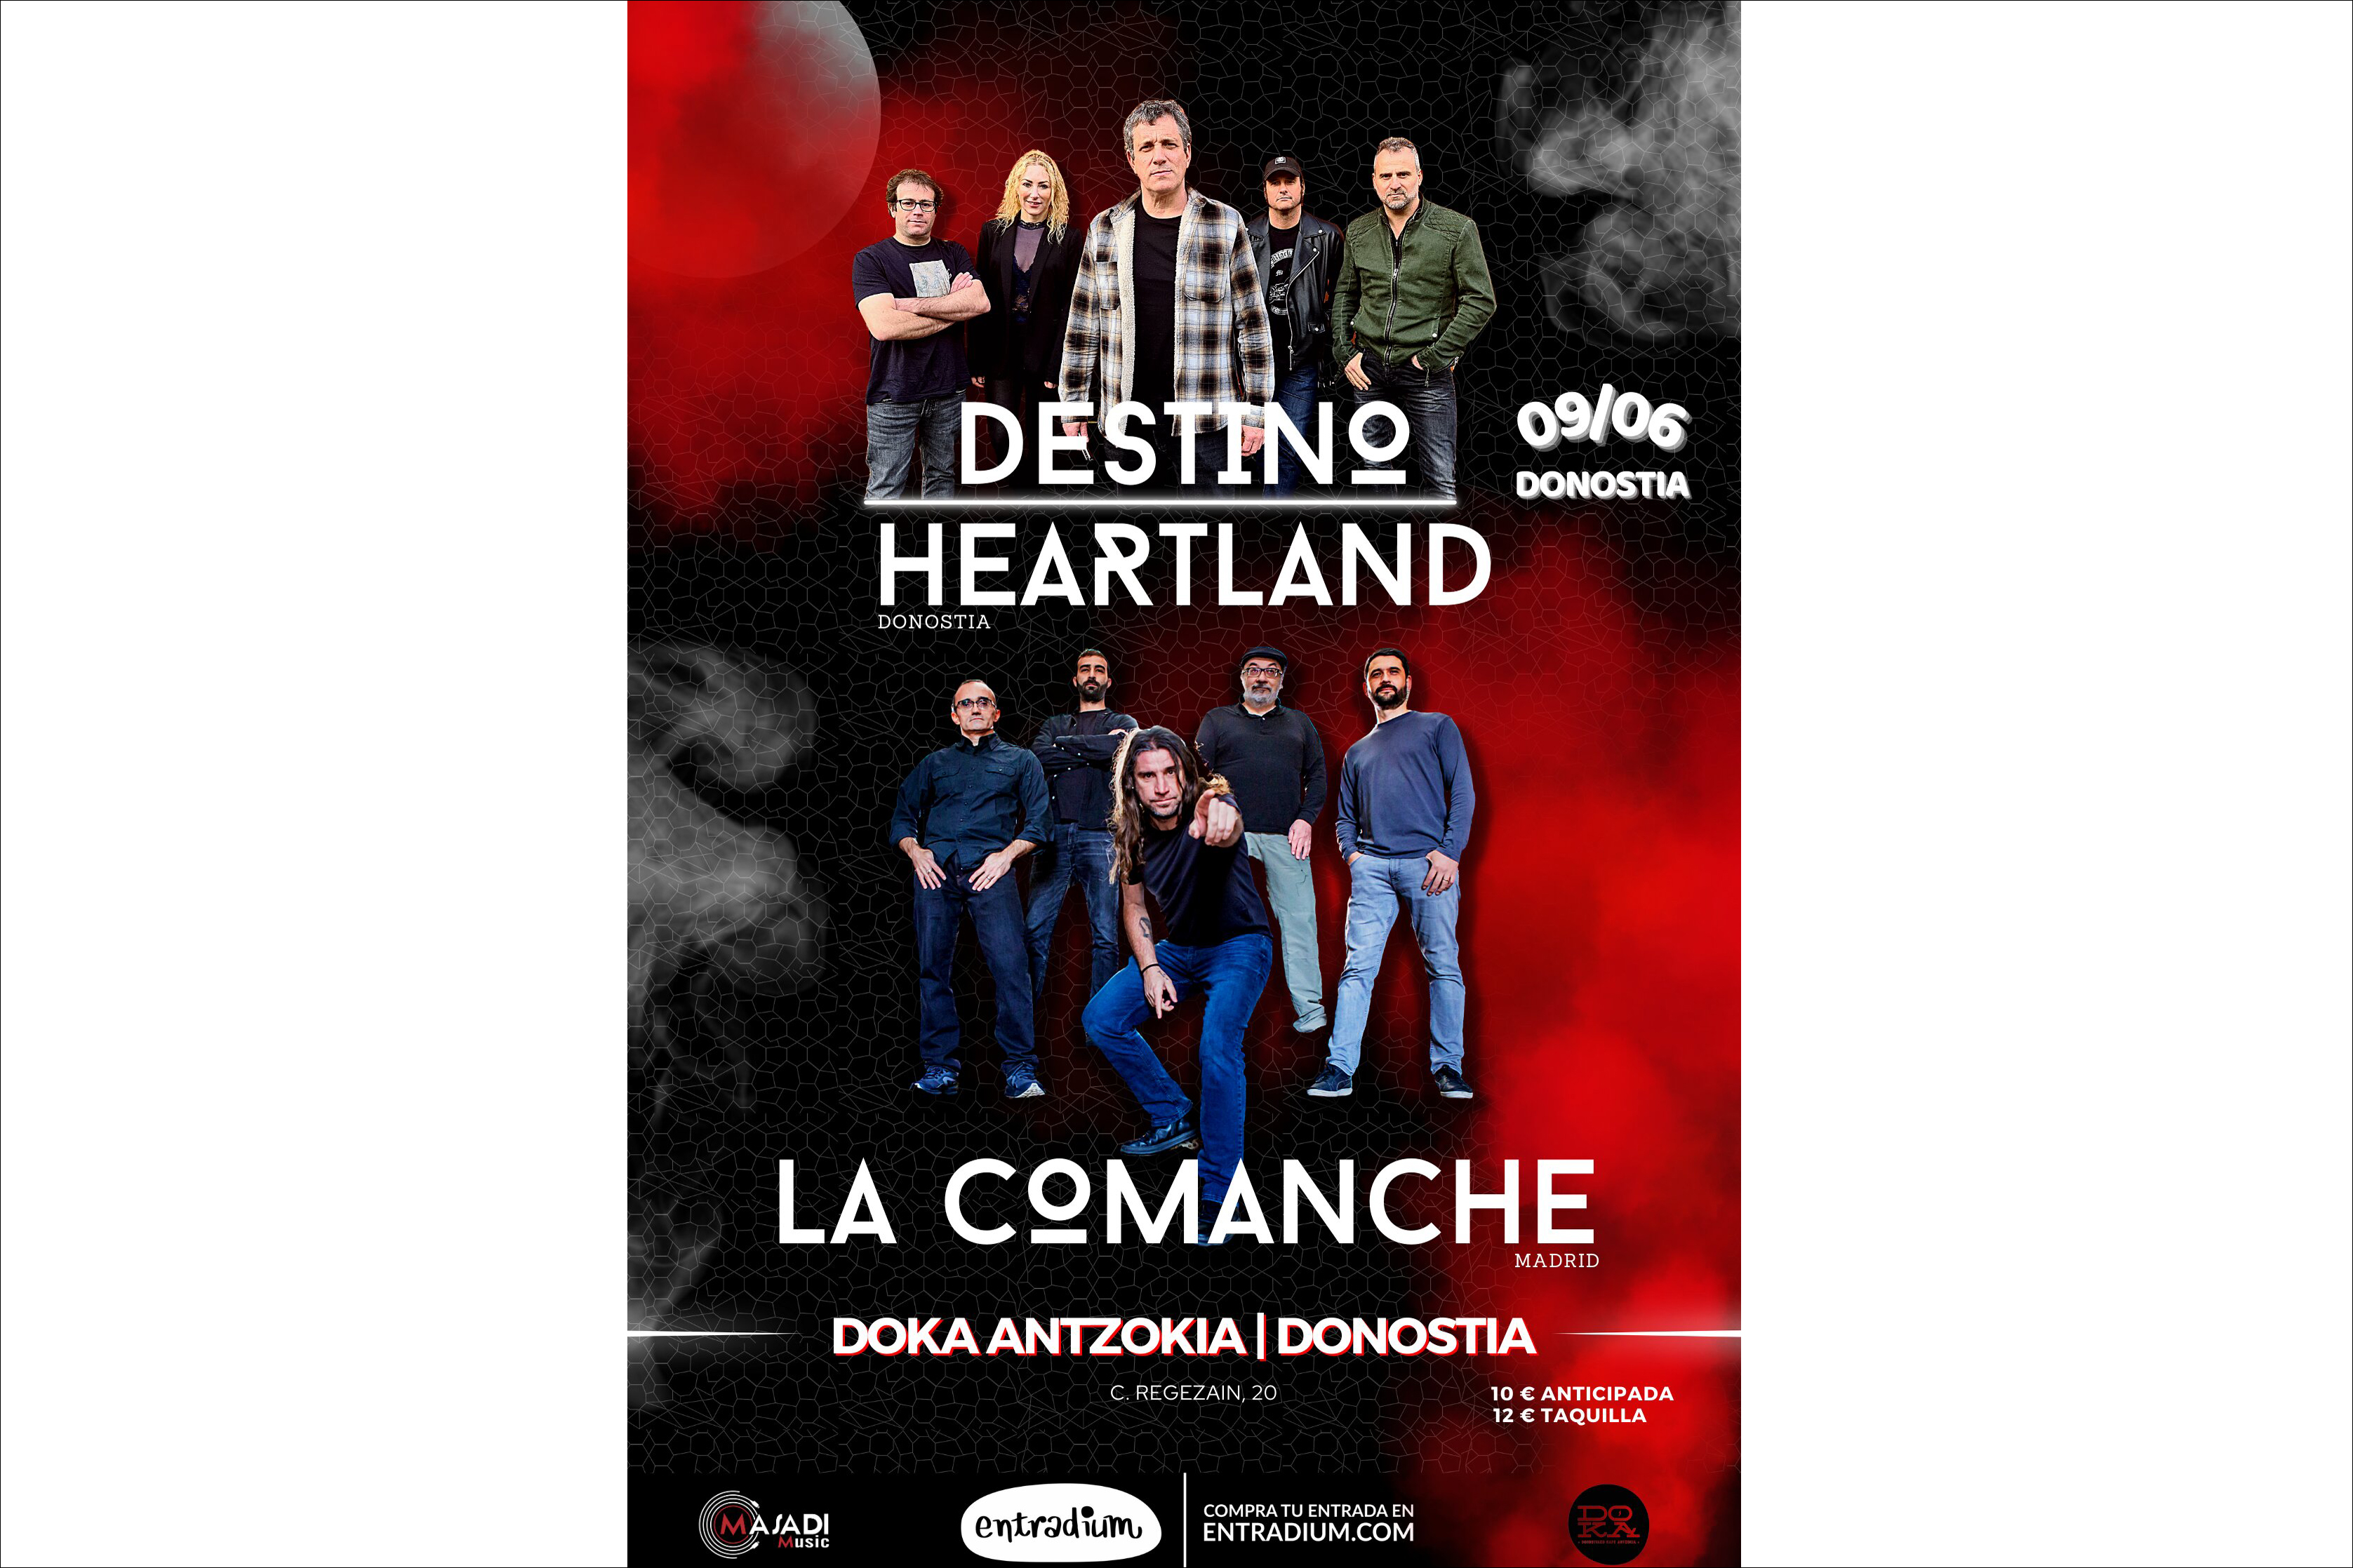 DESTINO HEARTLAND + LA COMANCHE